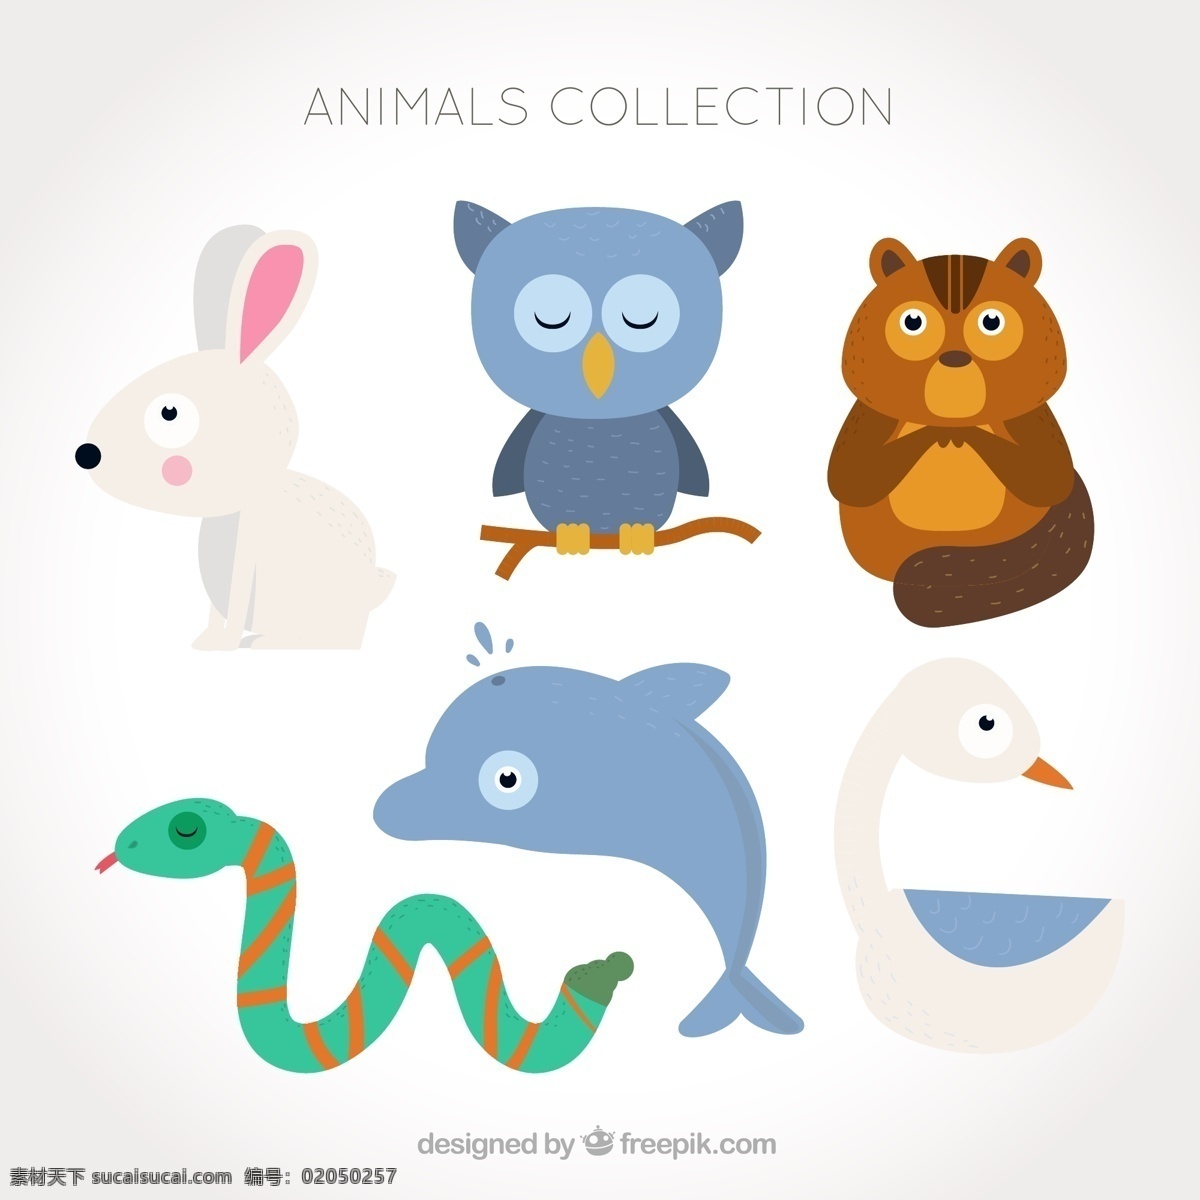 各种各样 小 动物 合集 元素 设计素材 创意设计 小动物 卡通 可爱 矢量素材 鱼 熊